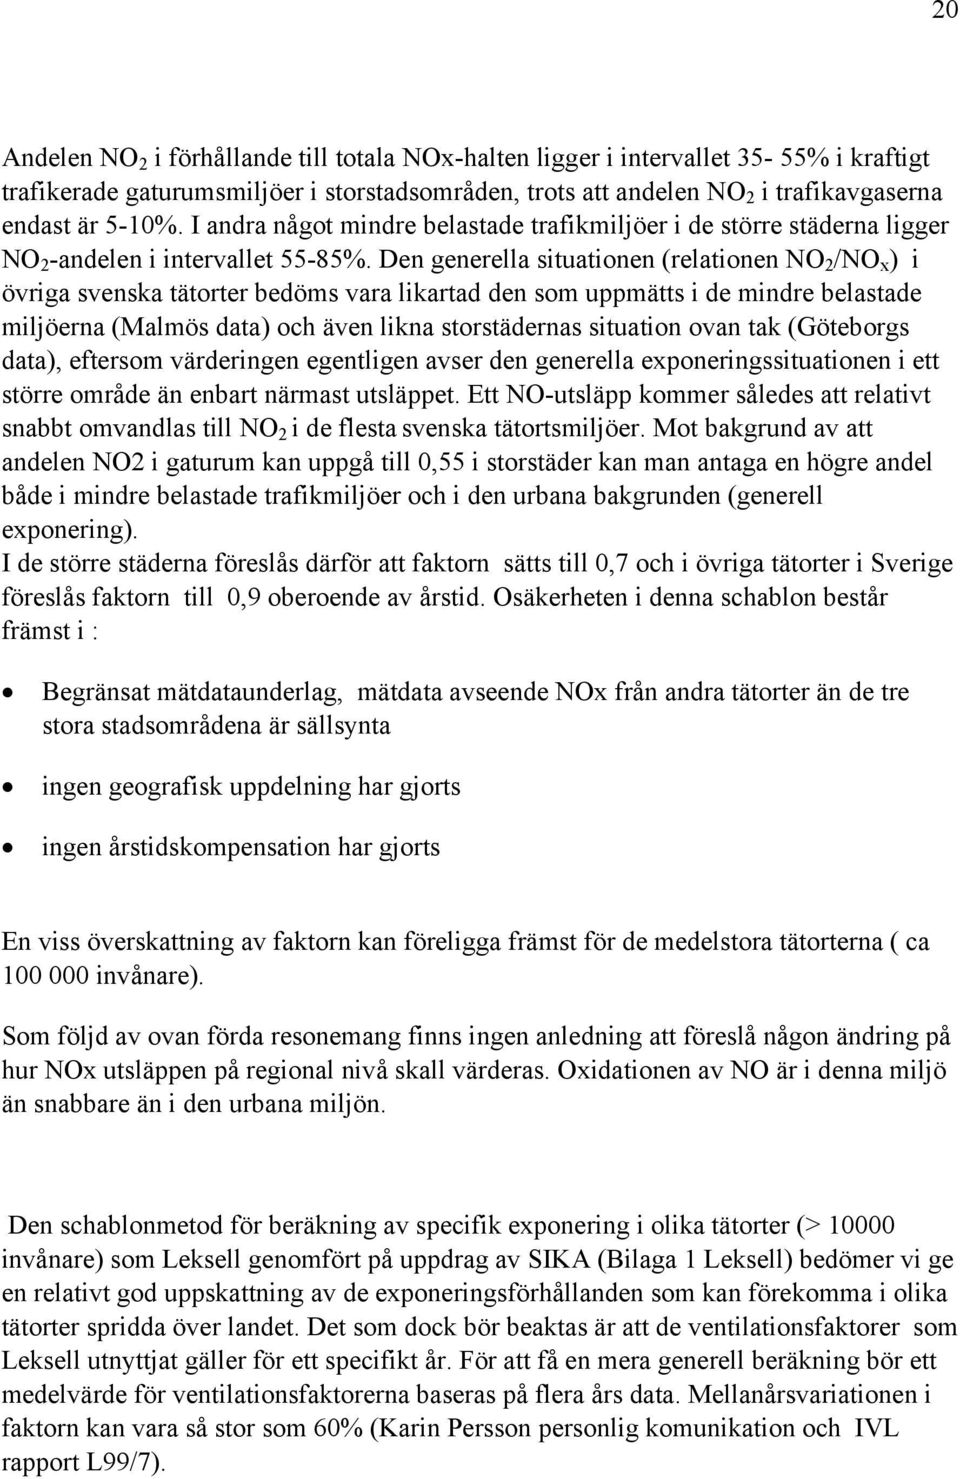 Den generella situationen (relationen NO 2 /NO x ) i övriga svenska tätorter bedöms vara likartad den som uppmätts i de mindre belastade miljöerna (Malmös data) och även likna storstädernas situation